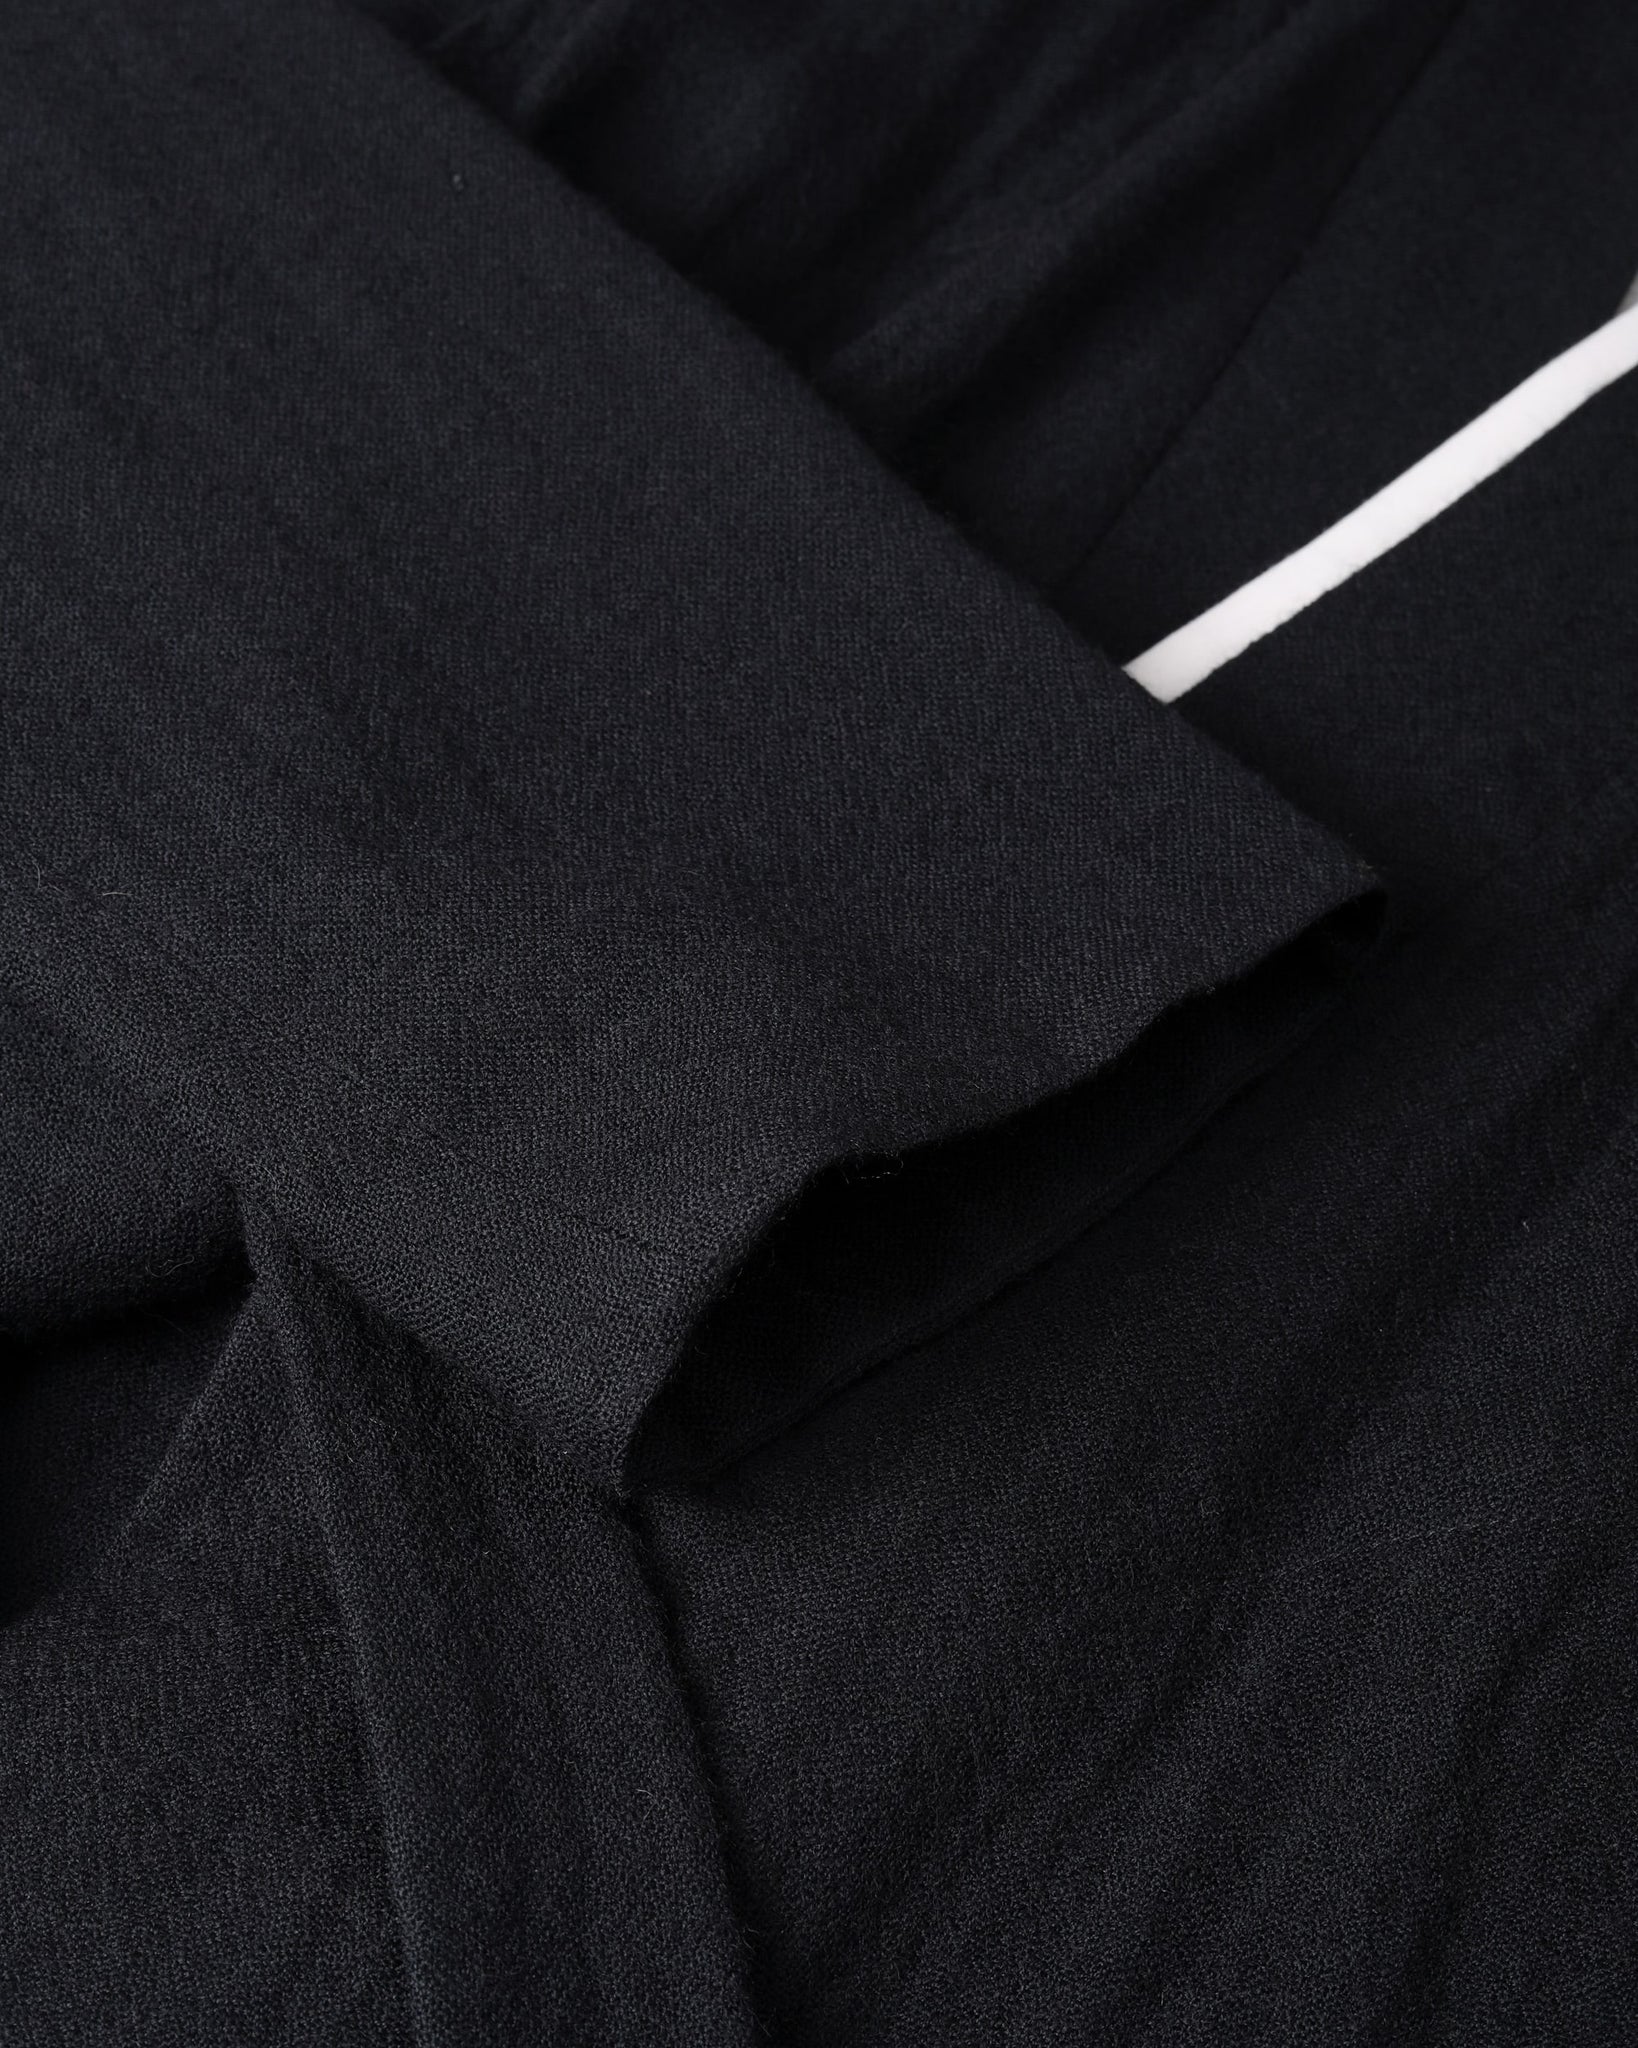 ROSEN Tsering Asymmetrical Suit in Wool Linen Gauze